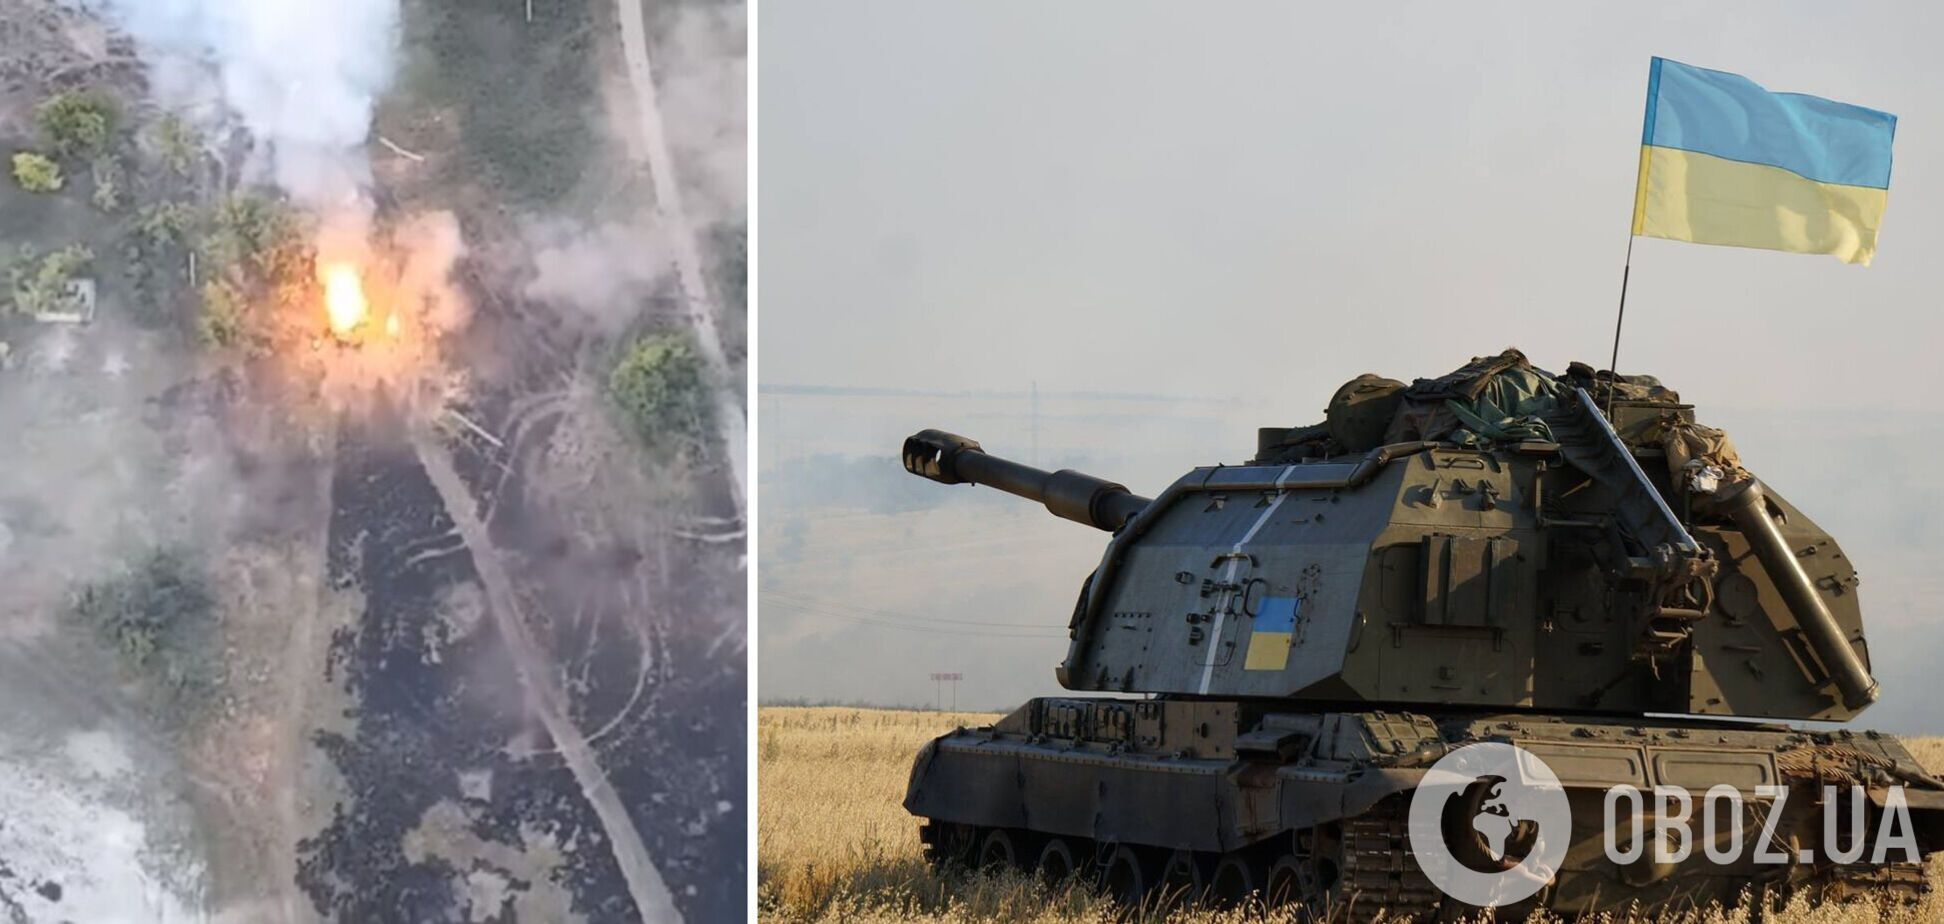 'Демилитаризация' идет по плану: украинские артиллеристы показали яркие кадры уничтожения вражеской техники